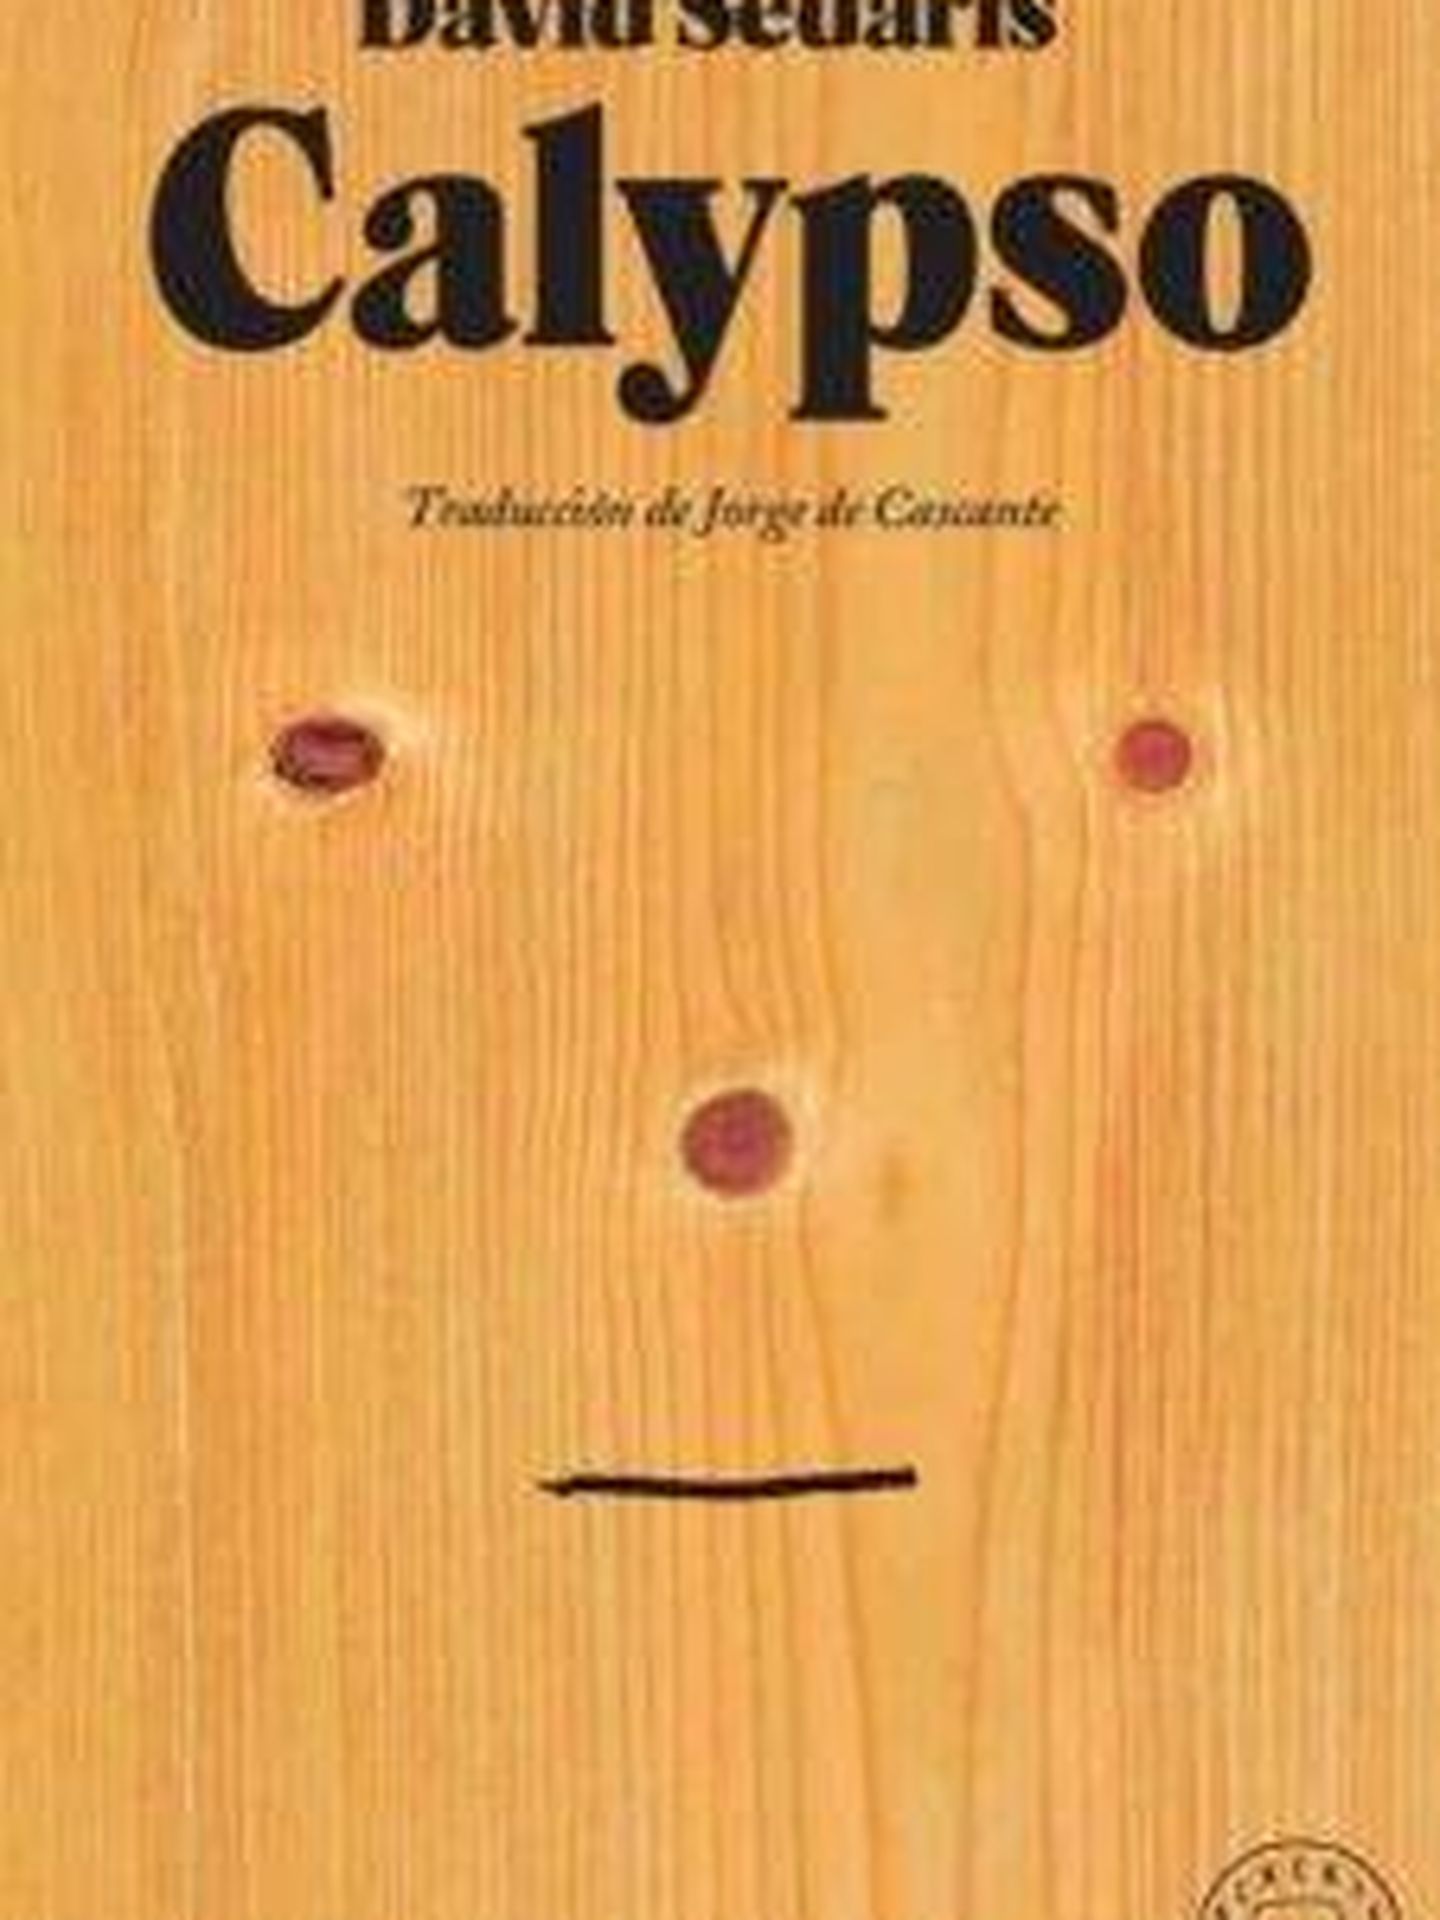 'Calypso'.